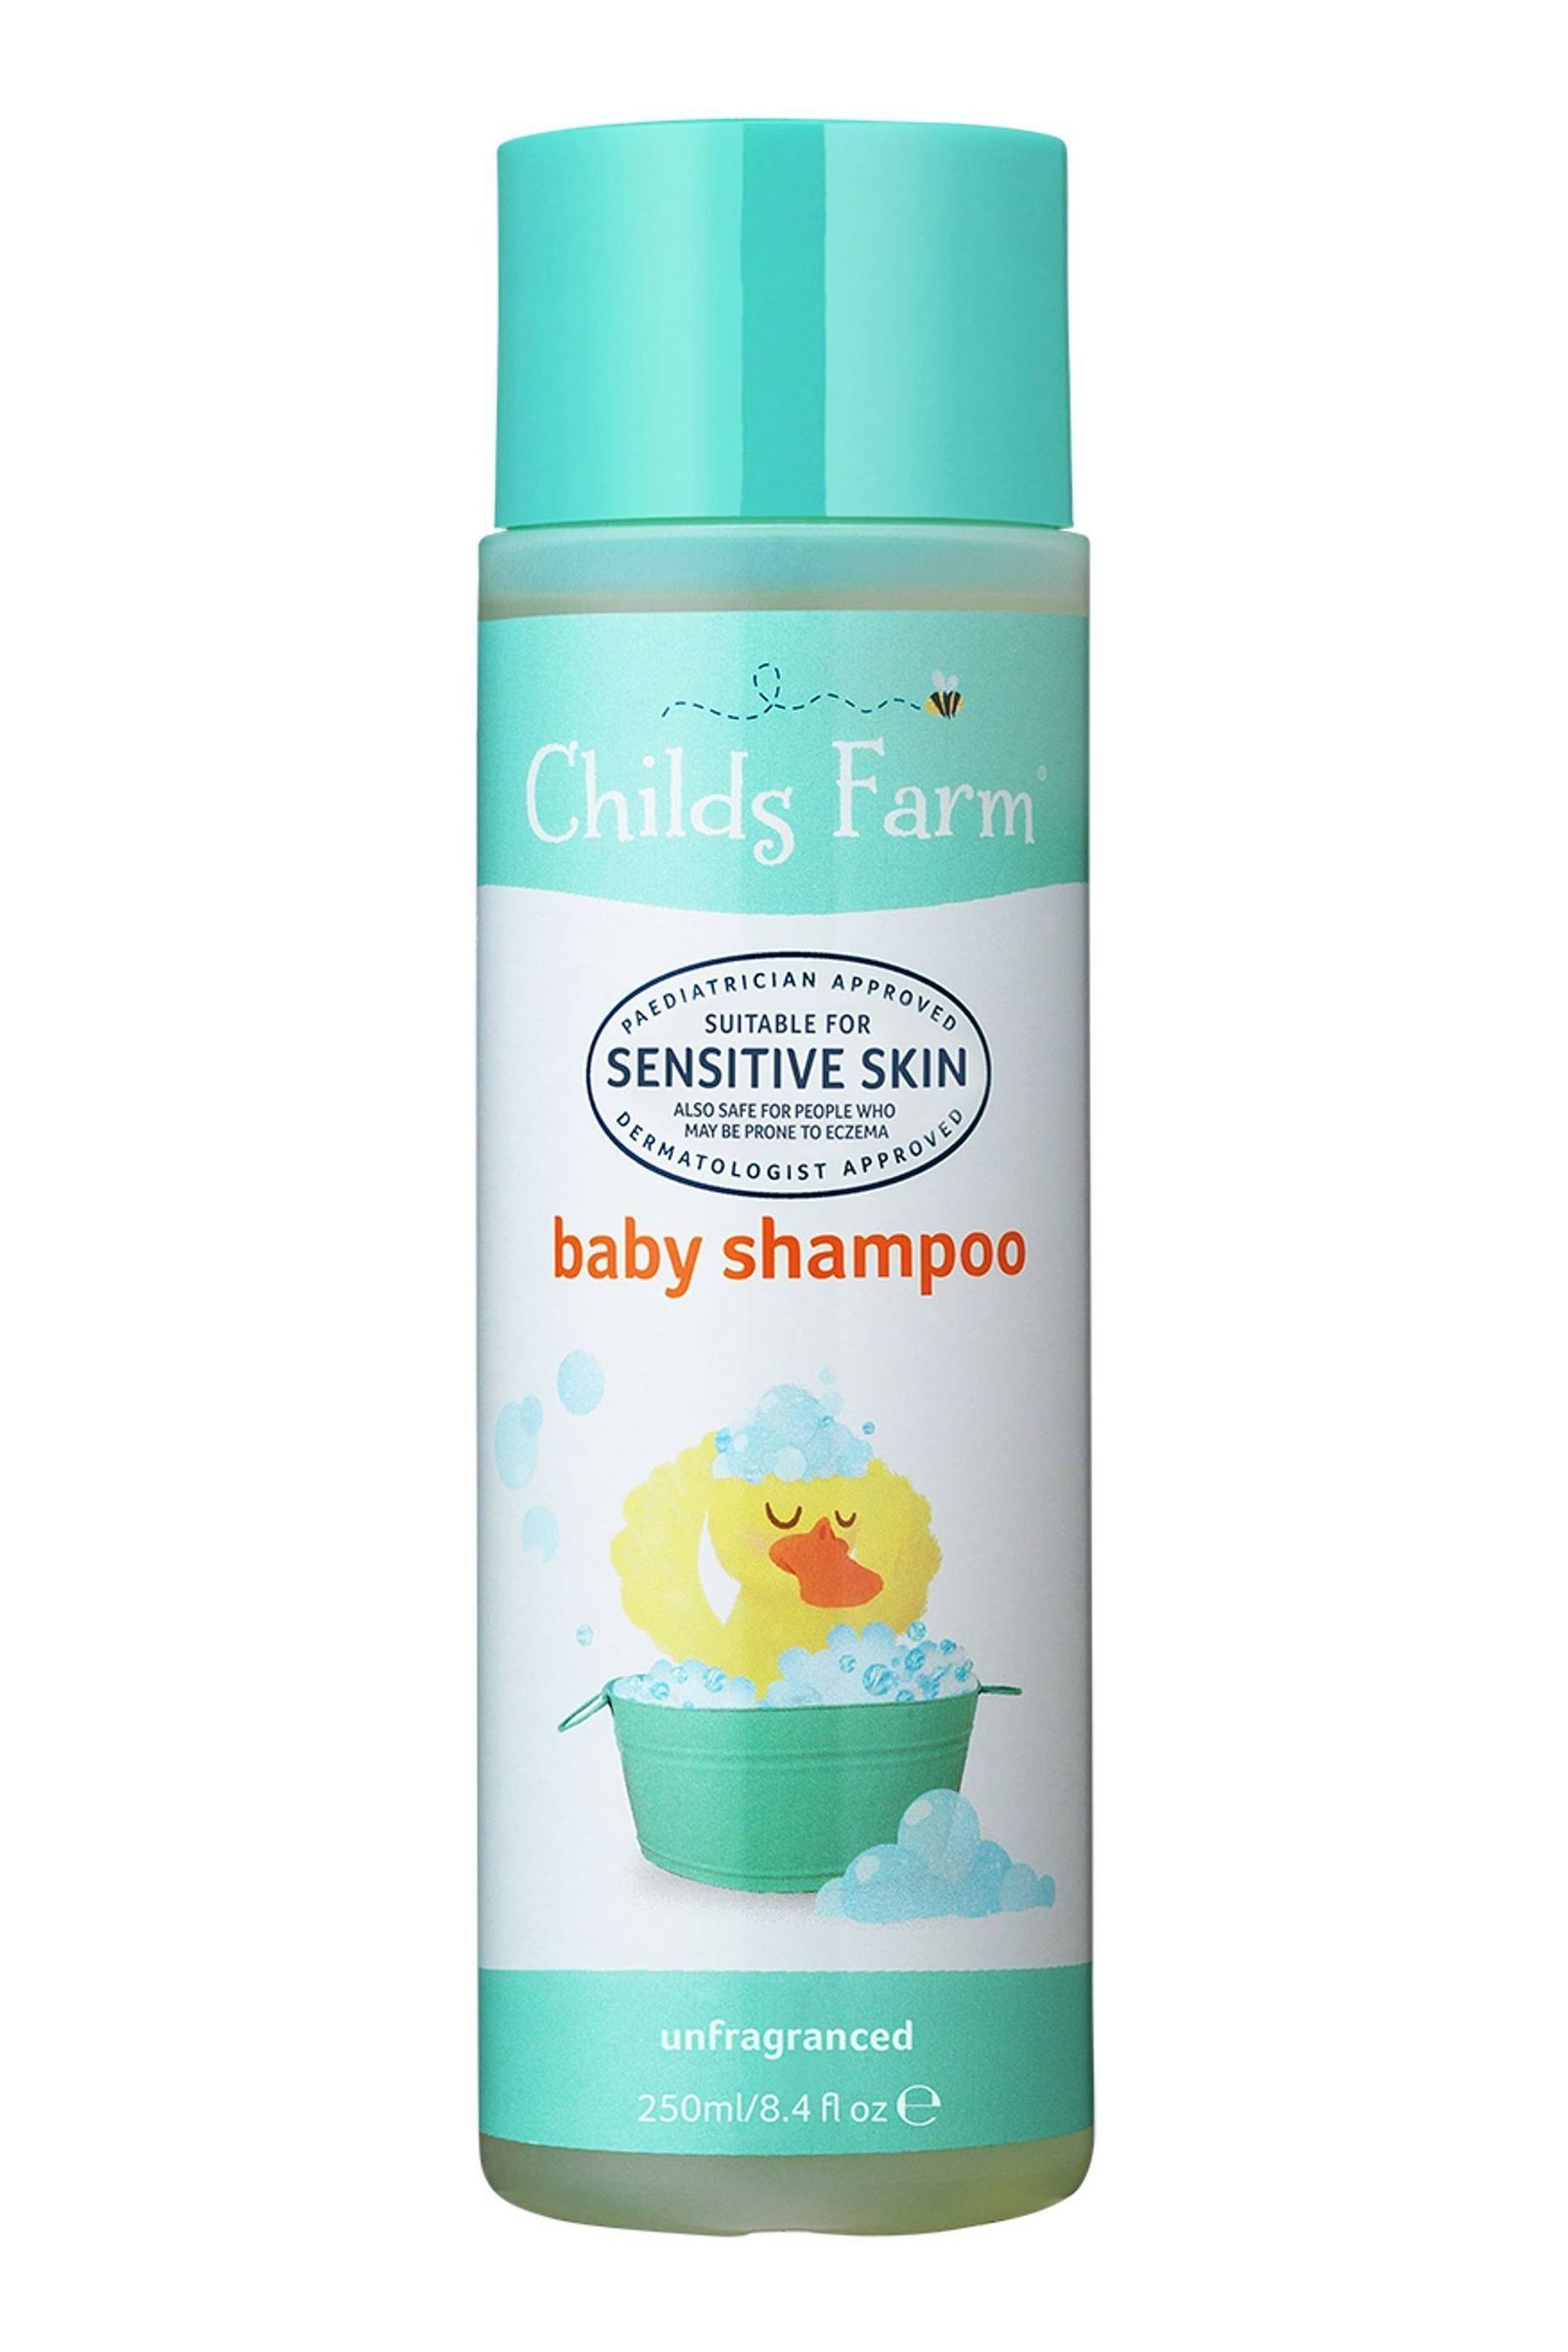 Childs Farm Baby Shampoo - Unfragranced, 250ml